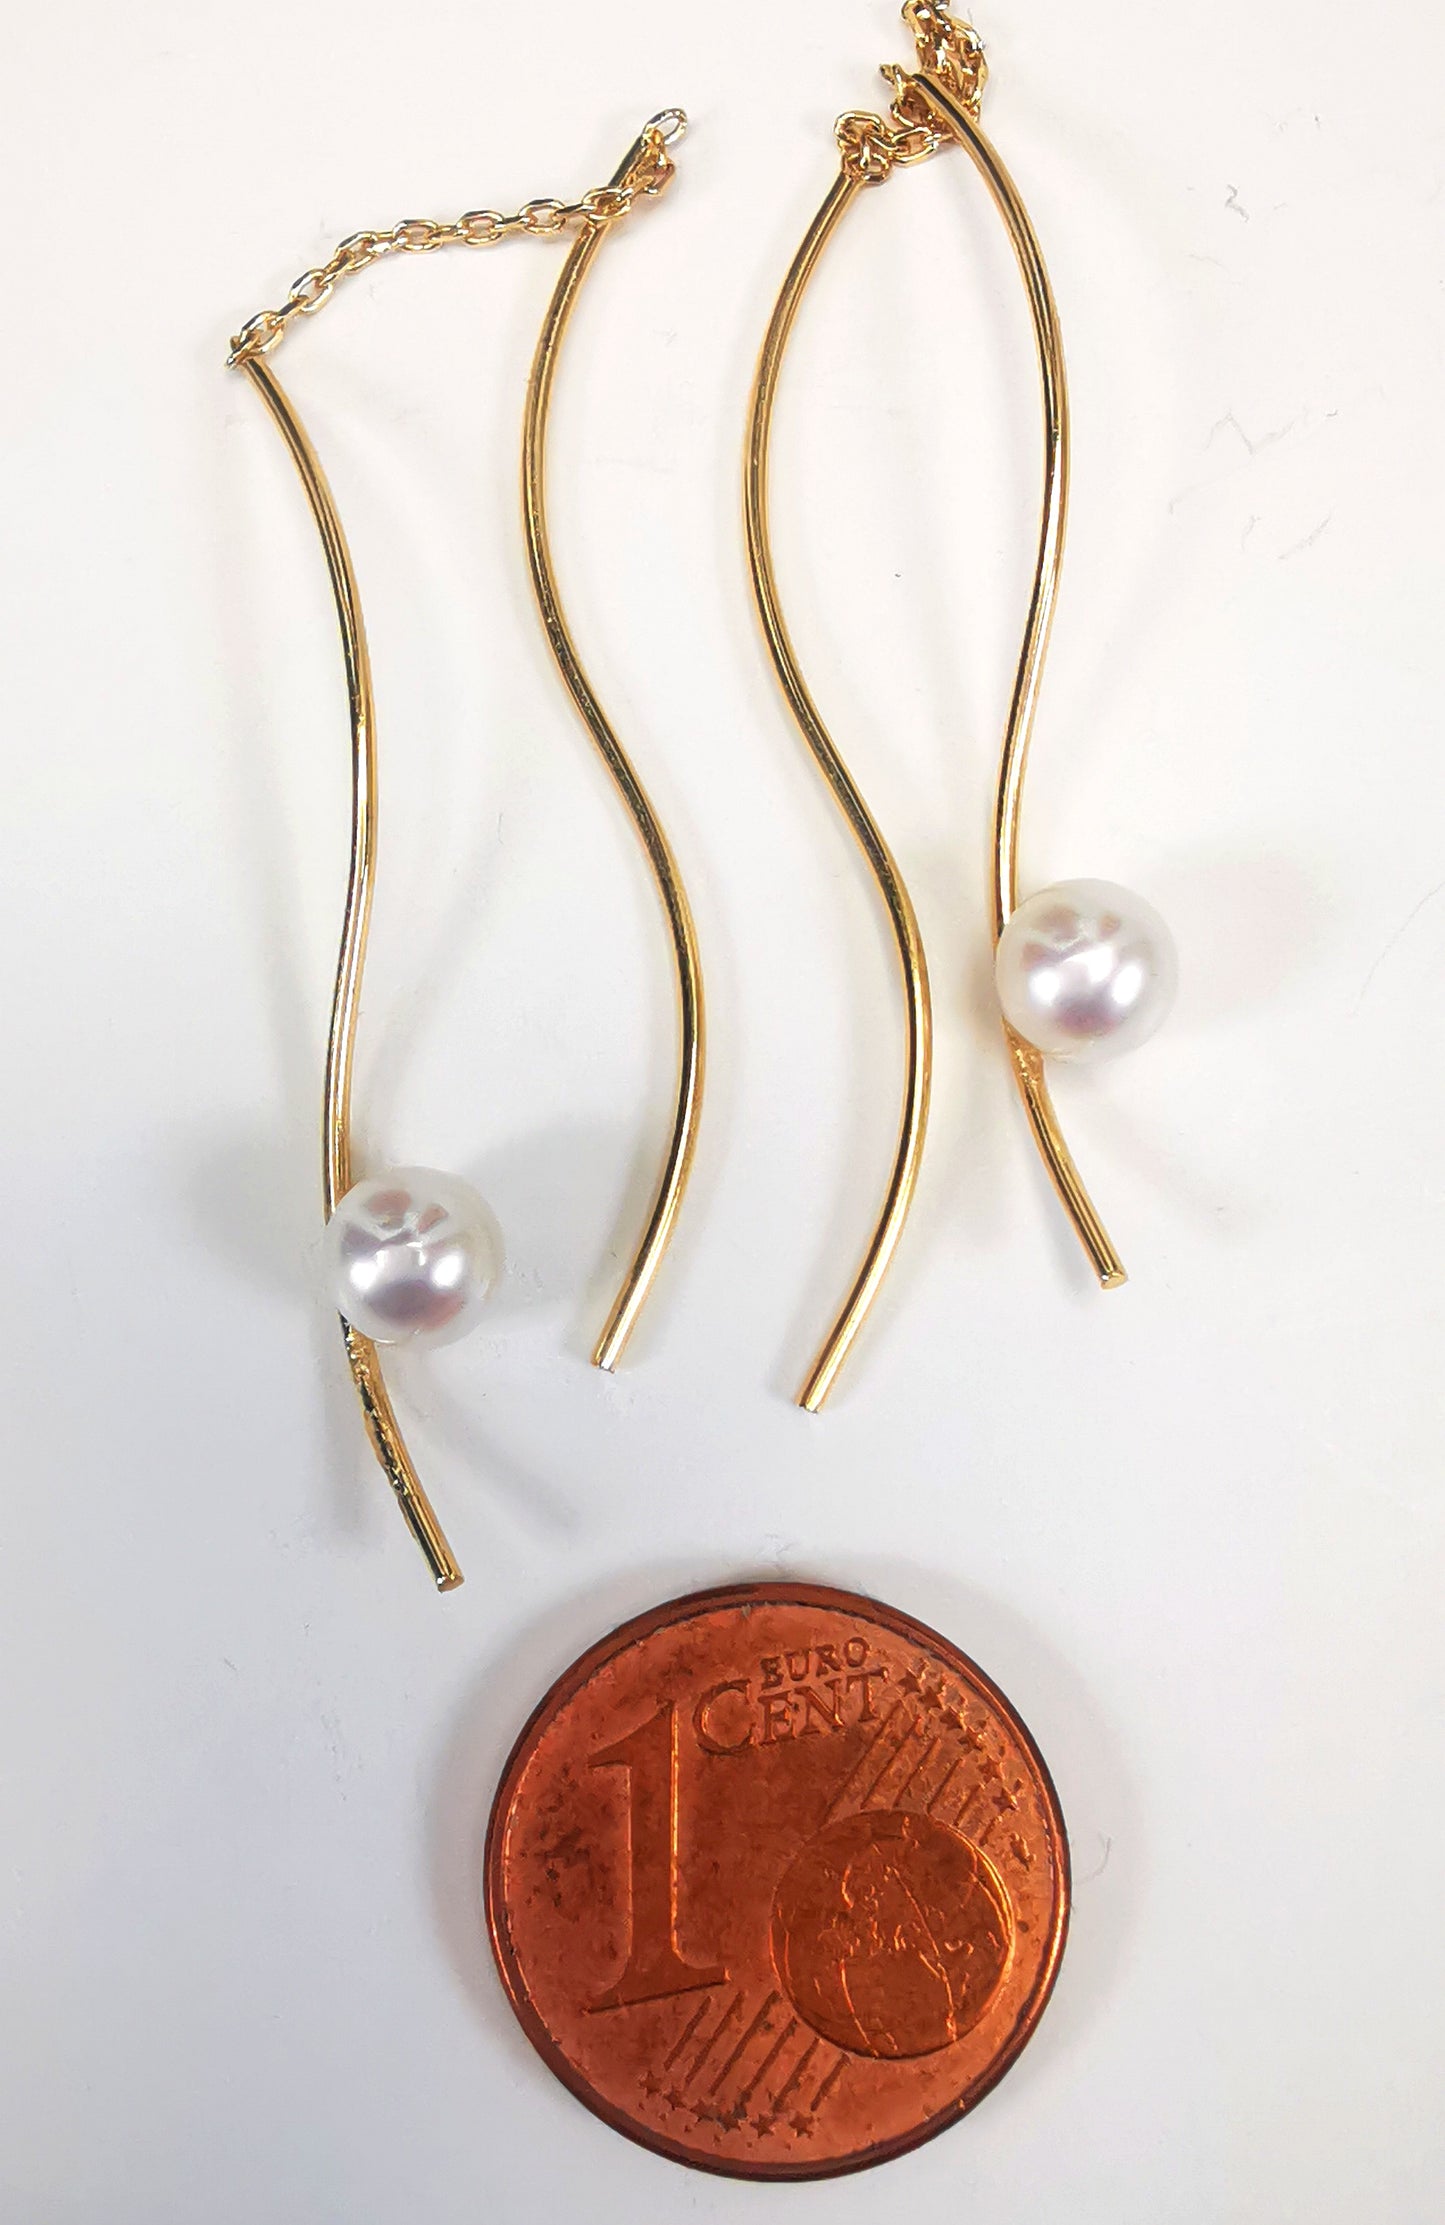 Boucles d'oreilles perles de culture blanches rondes 5mm sur pendants plaqués or. Les pendants sont constitués de deux "s" longs de 45mm reliés par 15mm de chaine. Sur un des 2 "s", la perle est montée perpendiculairement, à 8mm du bas. Présentées cote à cote, perle en bas, au dessus d'une pièce de 1 centime, posées sur fond blanc. Vue de dessus.